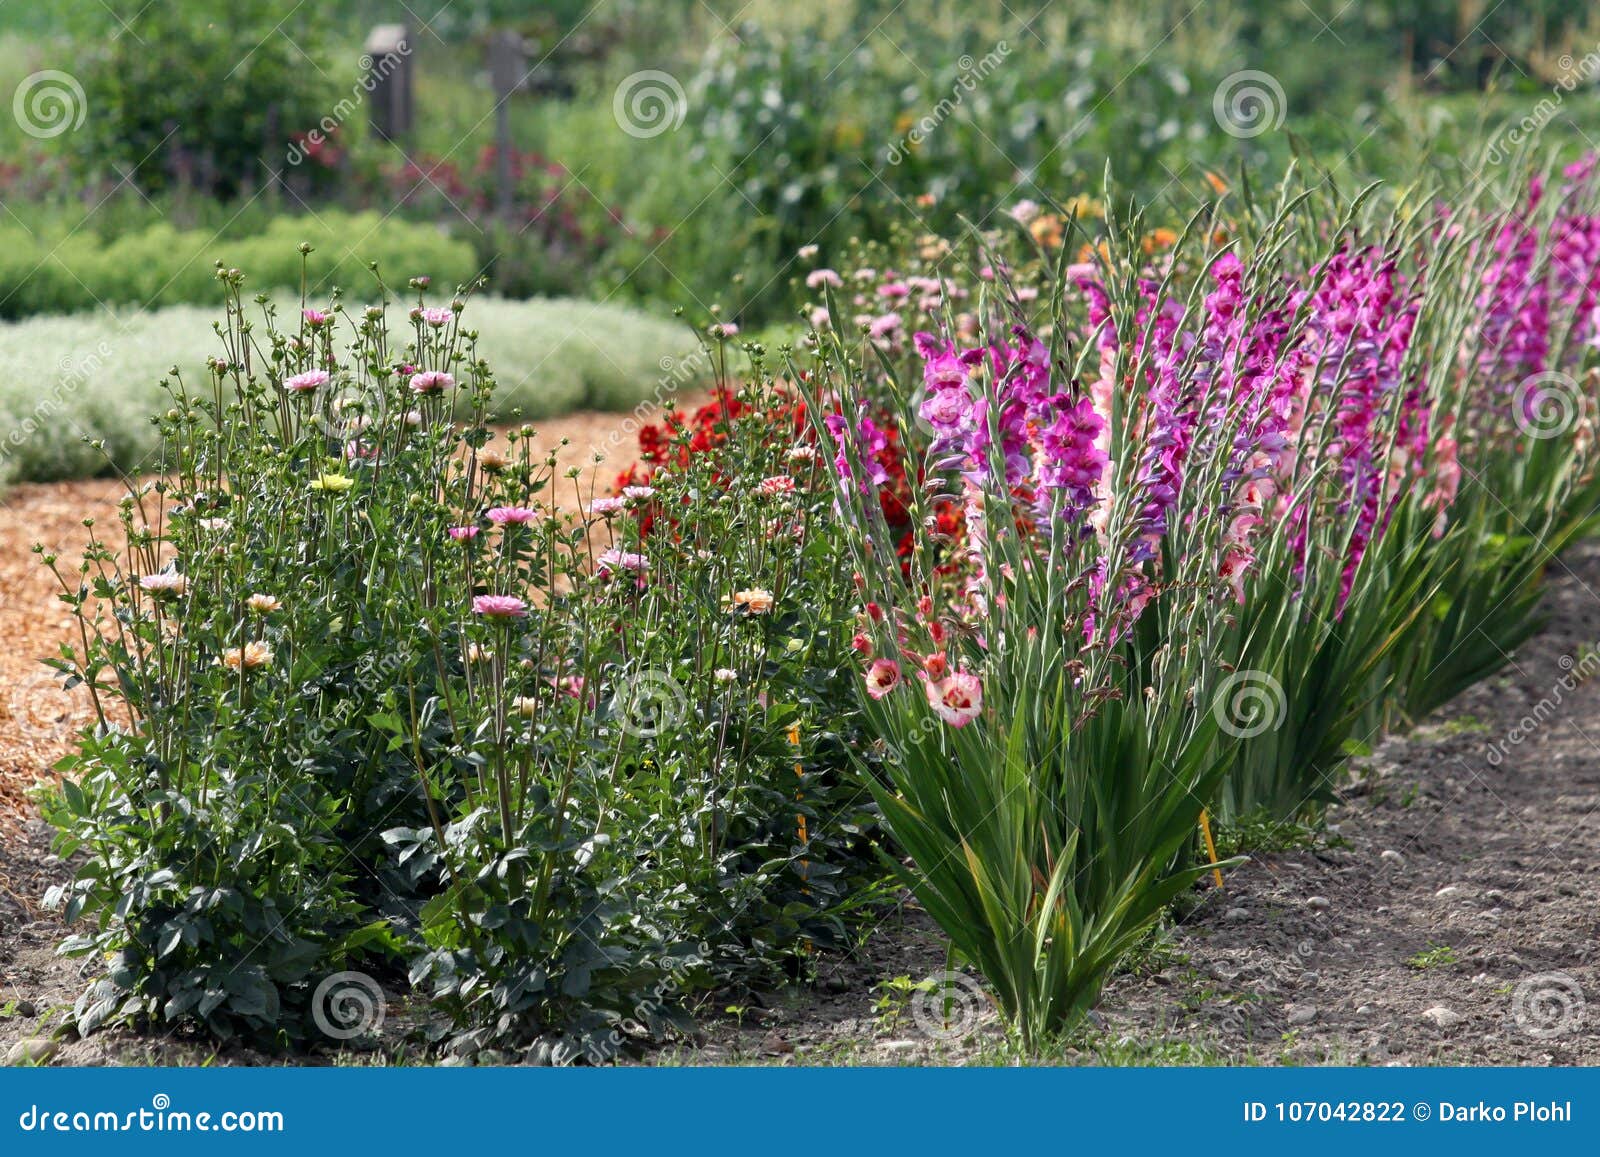 Canteiro De Flores Do Verão Com Tipos De Flor, Zinnia E Bulbos Da Dália  Foto de Stock - Imagem de floreado, jardim: 107042822